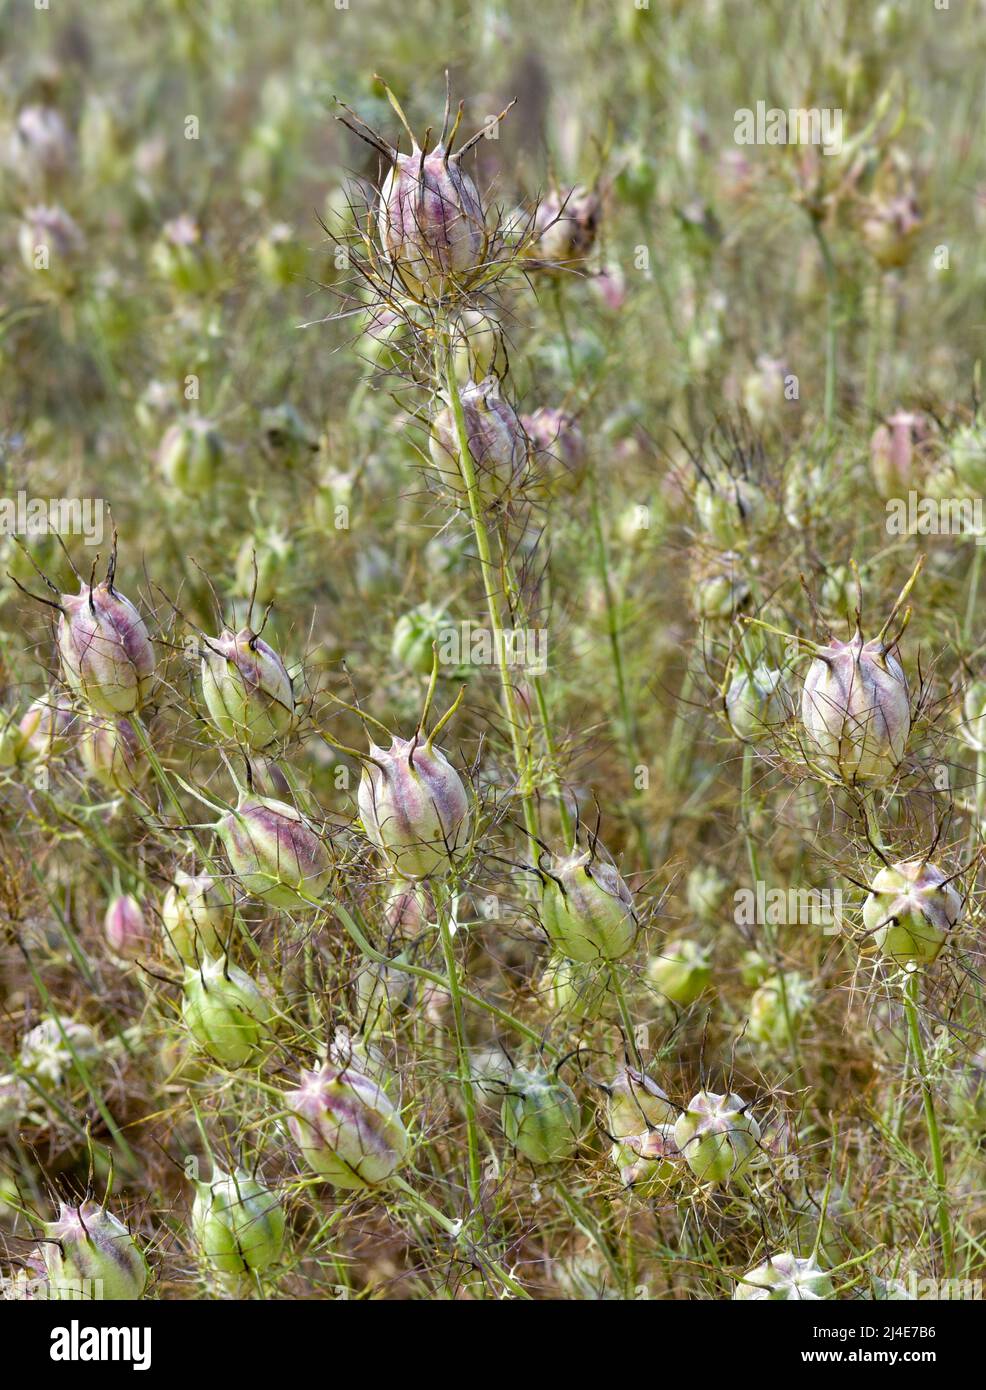 Una masa de cabezas de semillas de color púrpura y crema o vainas de semillas de Love in a Mist, también conocida como Nigella o Nigella damascena. Perfecto para organizar flores Foto de stock